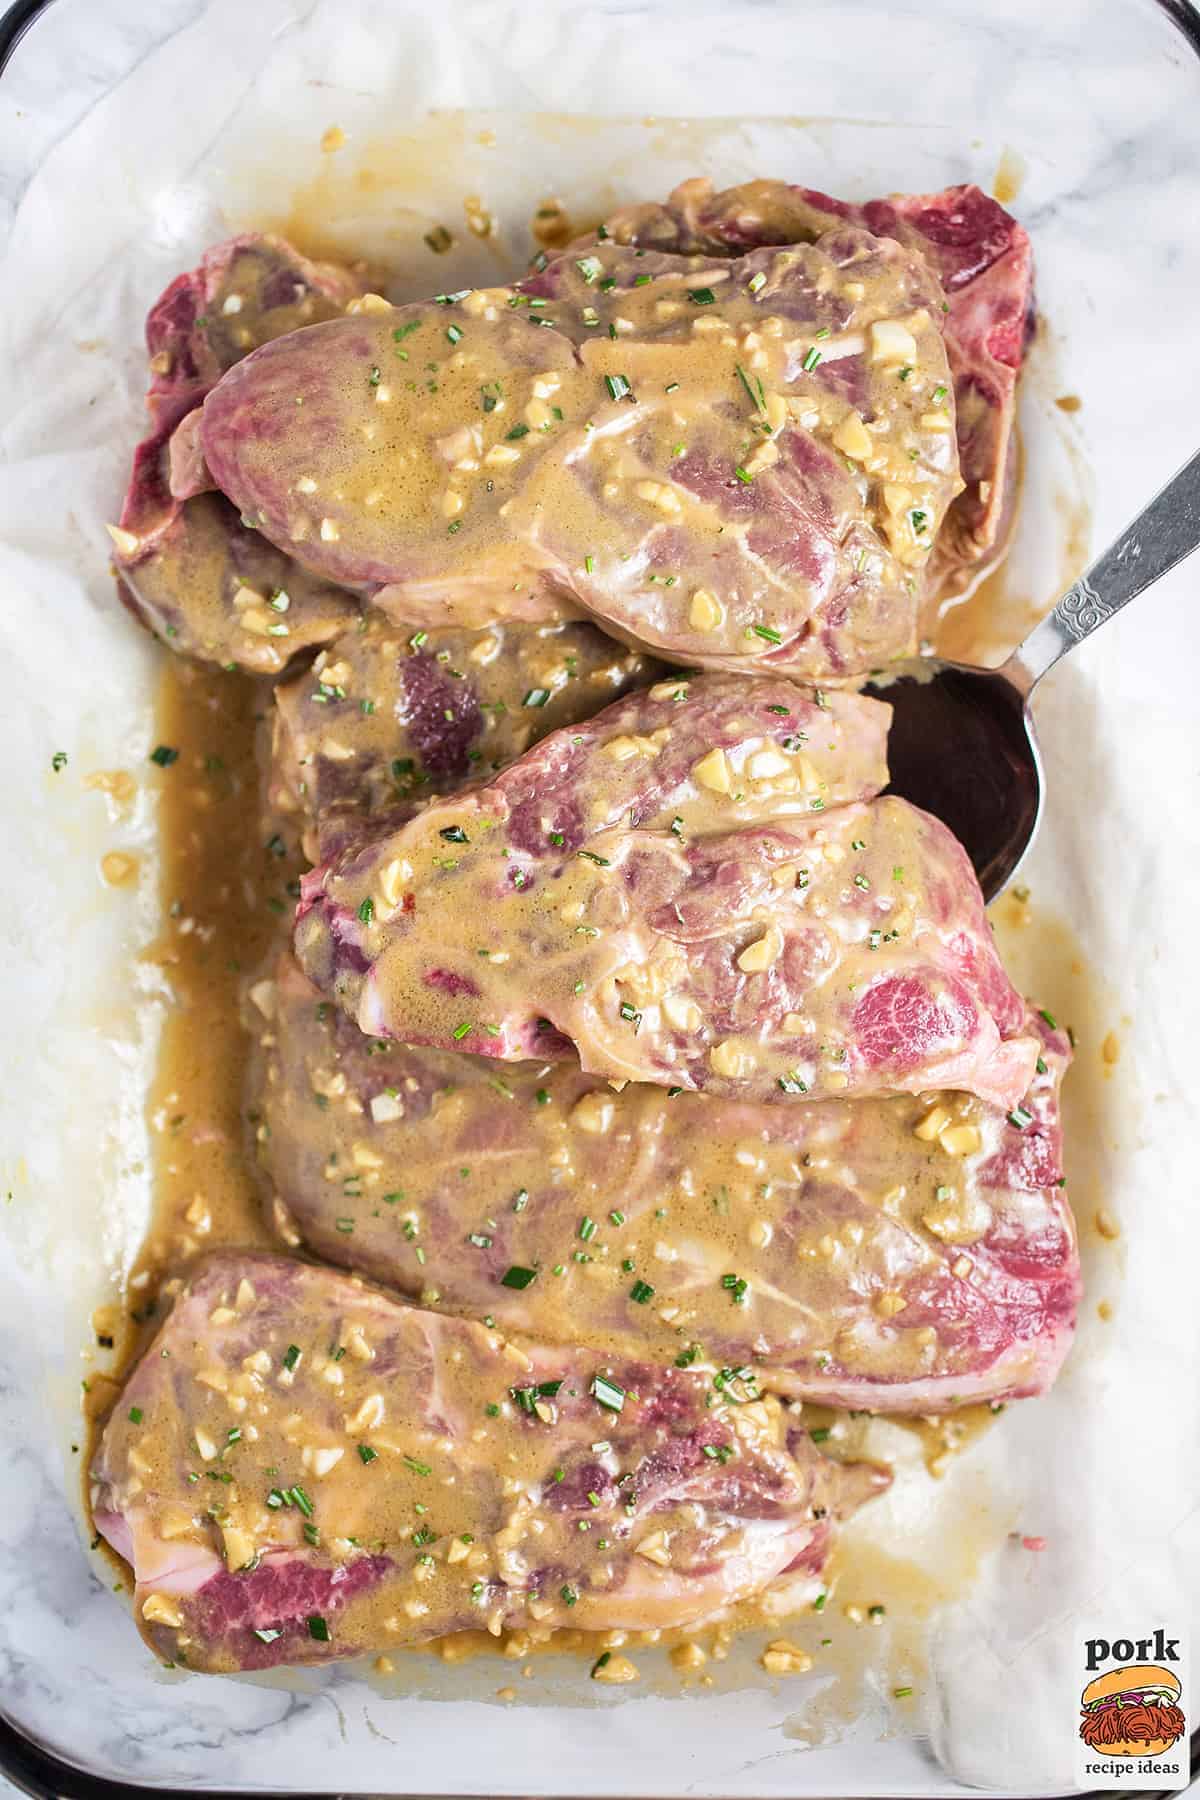 lamb chops marinating in the same pork chop marinade